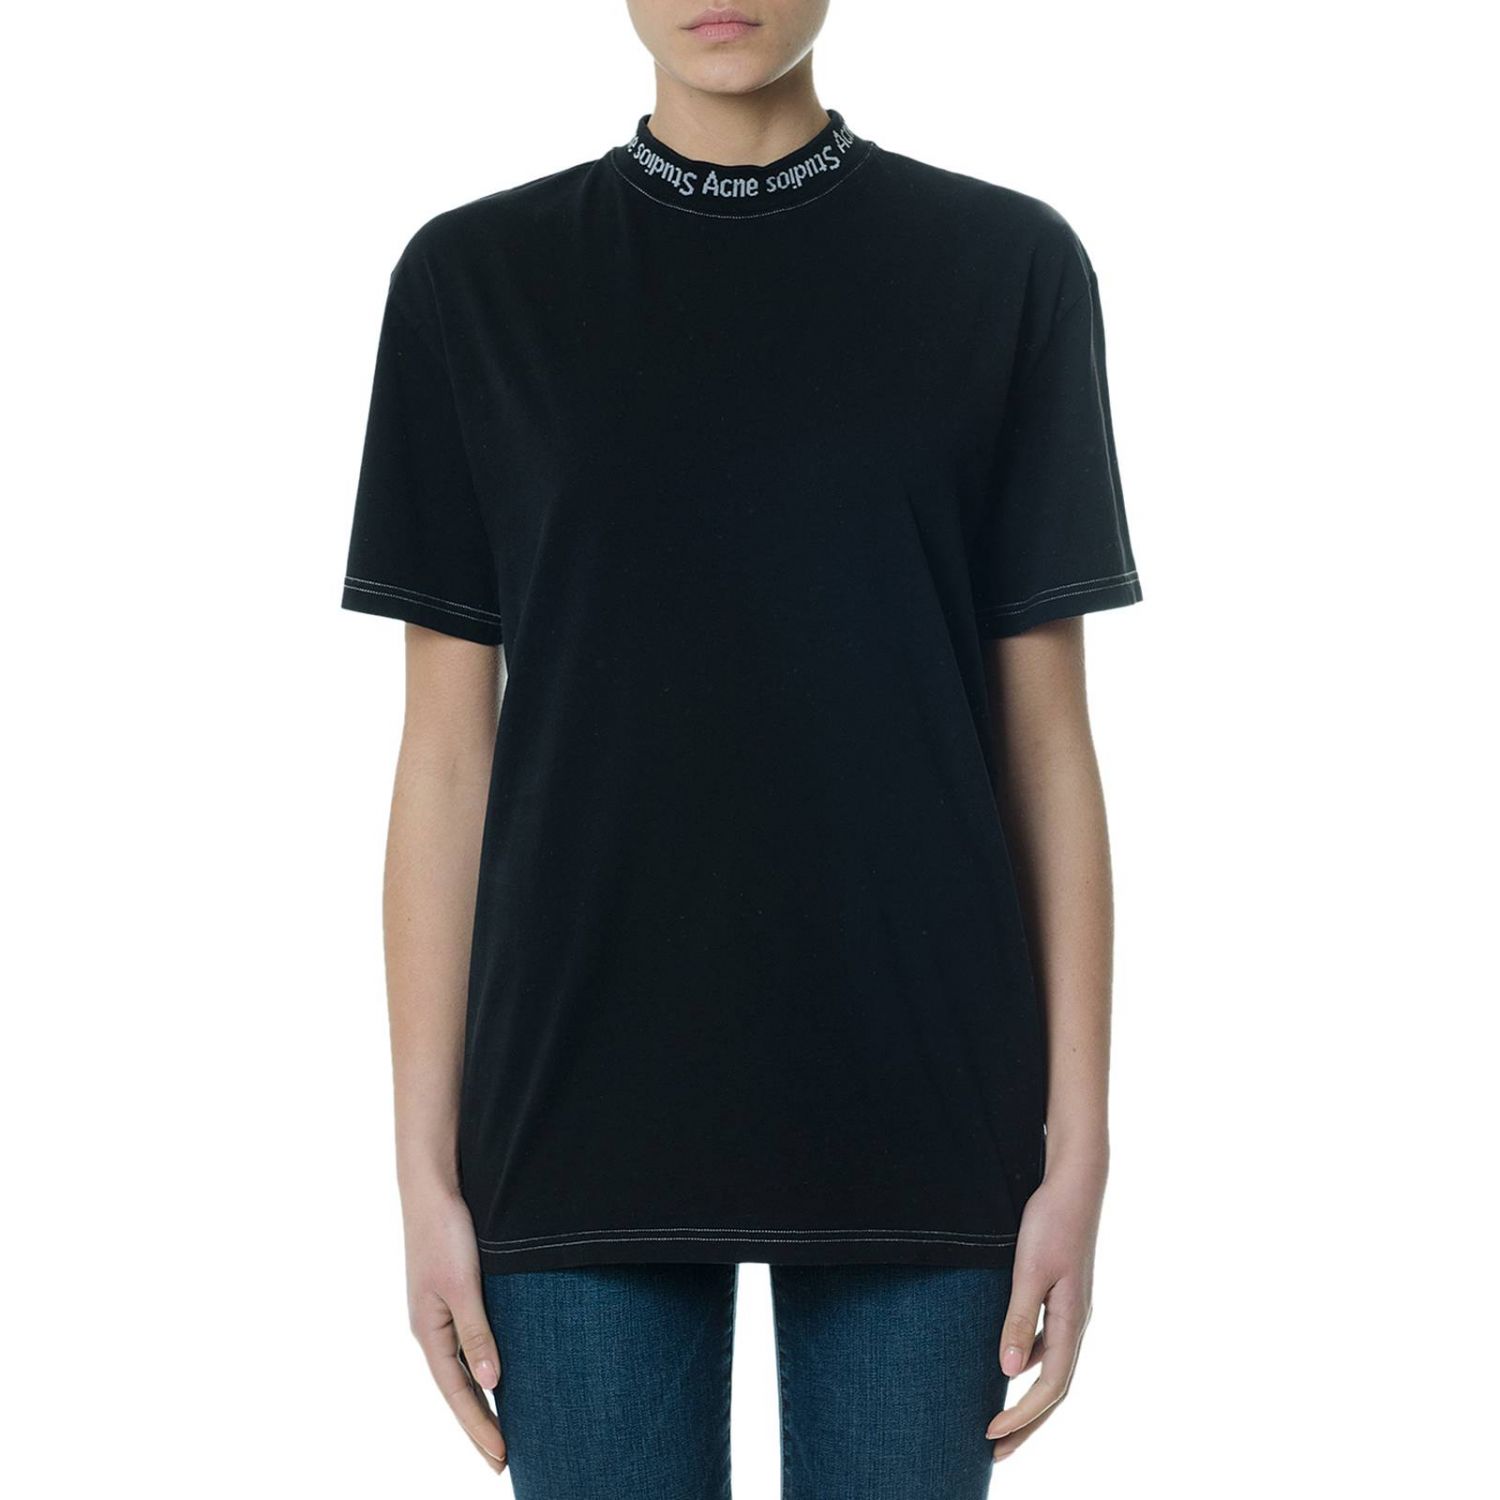 Acne Studios Outlet: T-shirt women | T-Shirt Acne Studios Women Black ...